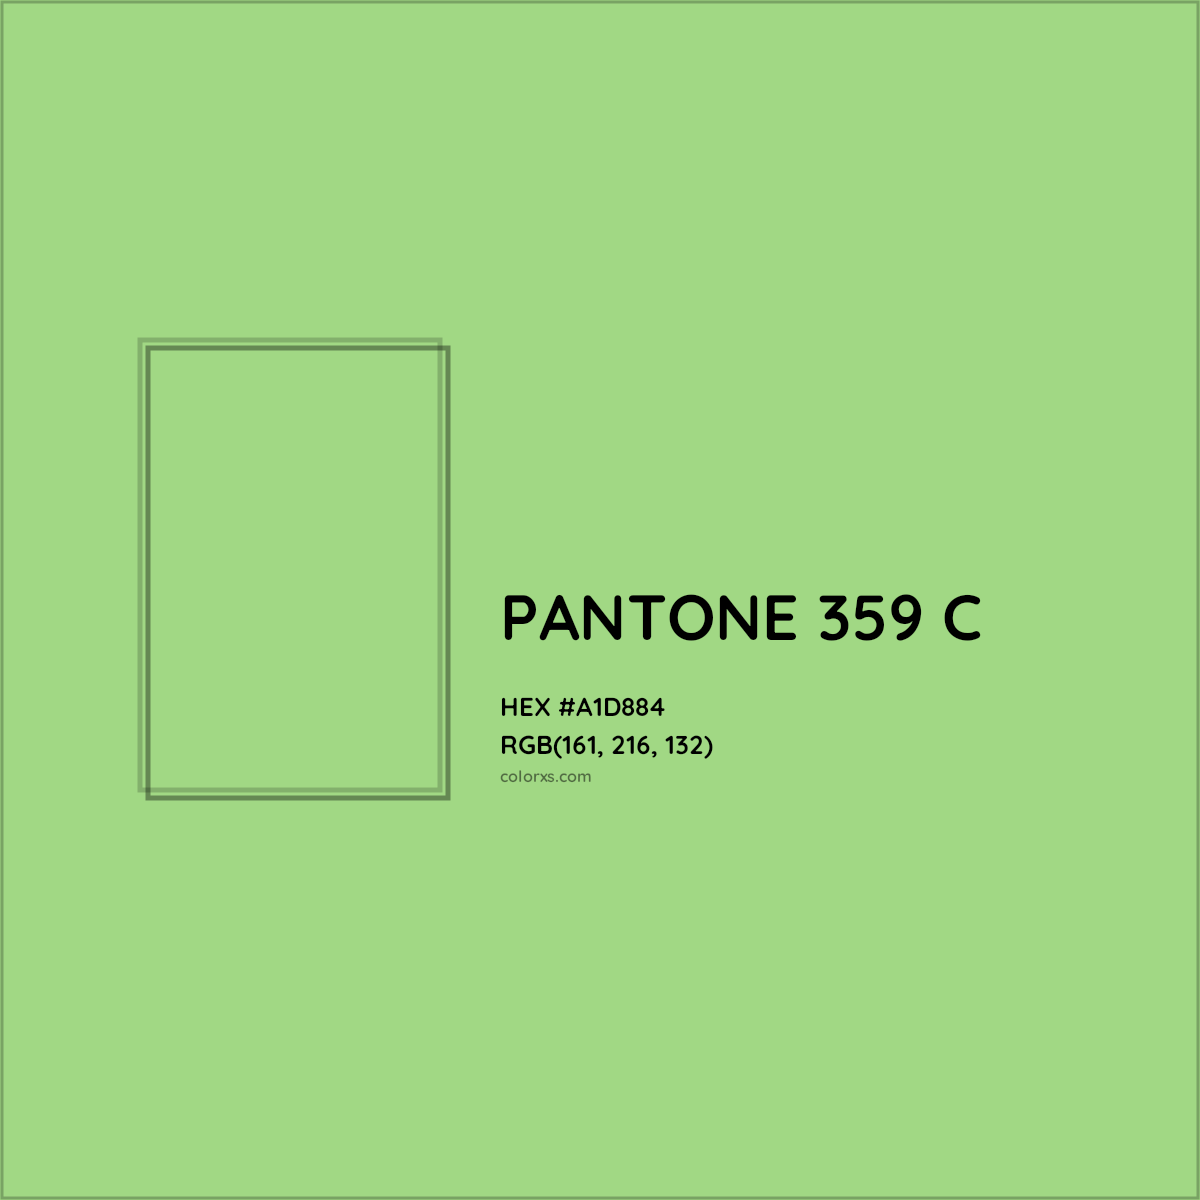 HEX #A1D884 PANTONE 359 C CMS Pantone PMS - Color Code